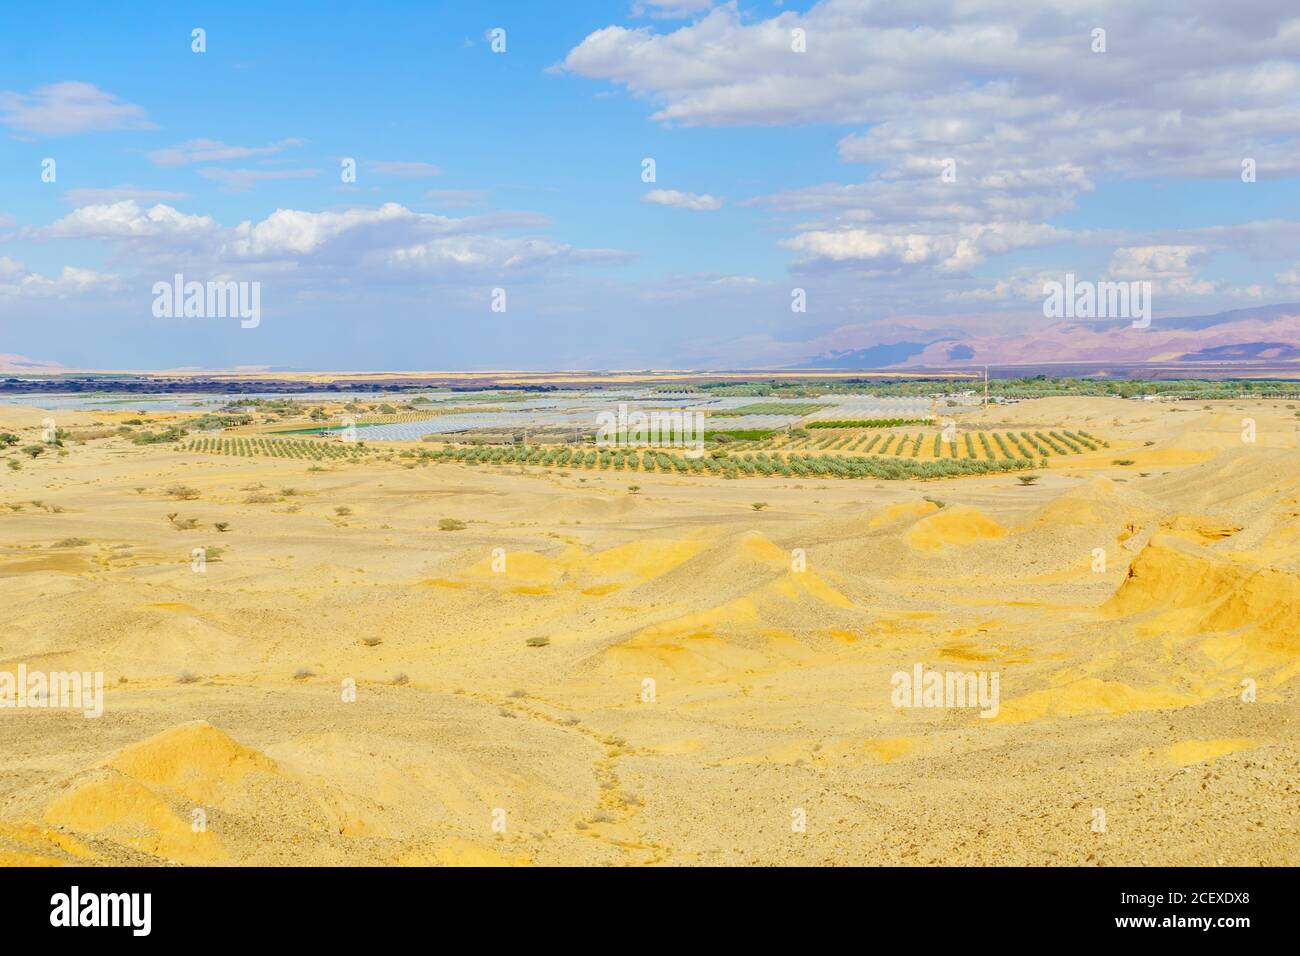 Paesaggio desertico nella Riserva Naturale di Sheizaf, il deserto di Arava, Israele meridionale Foto Stock